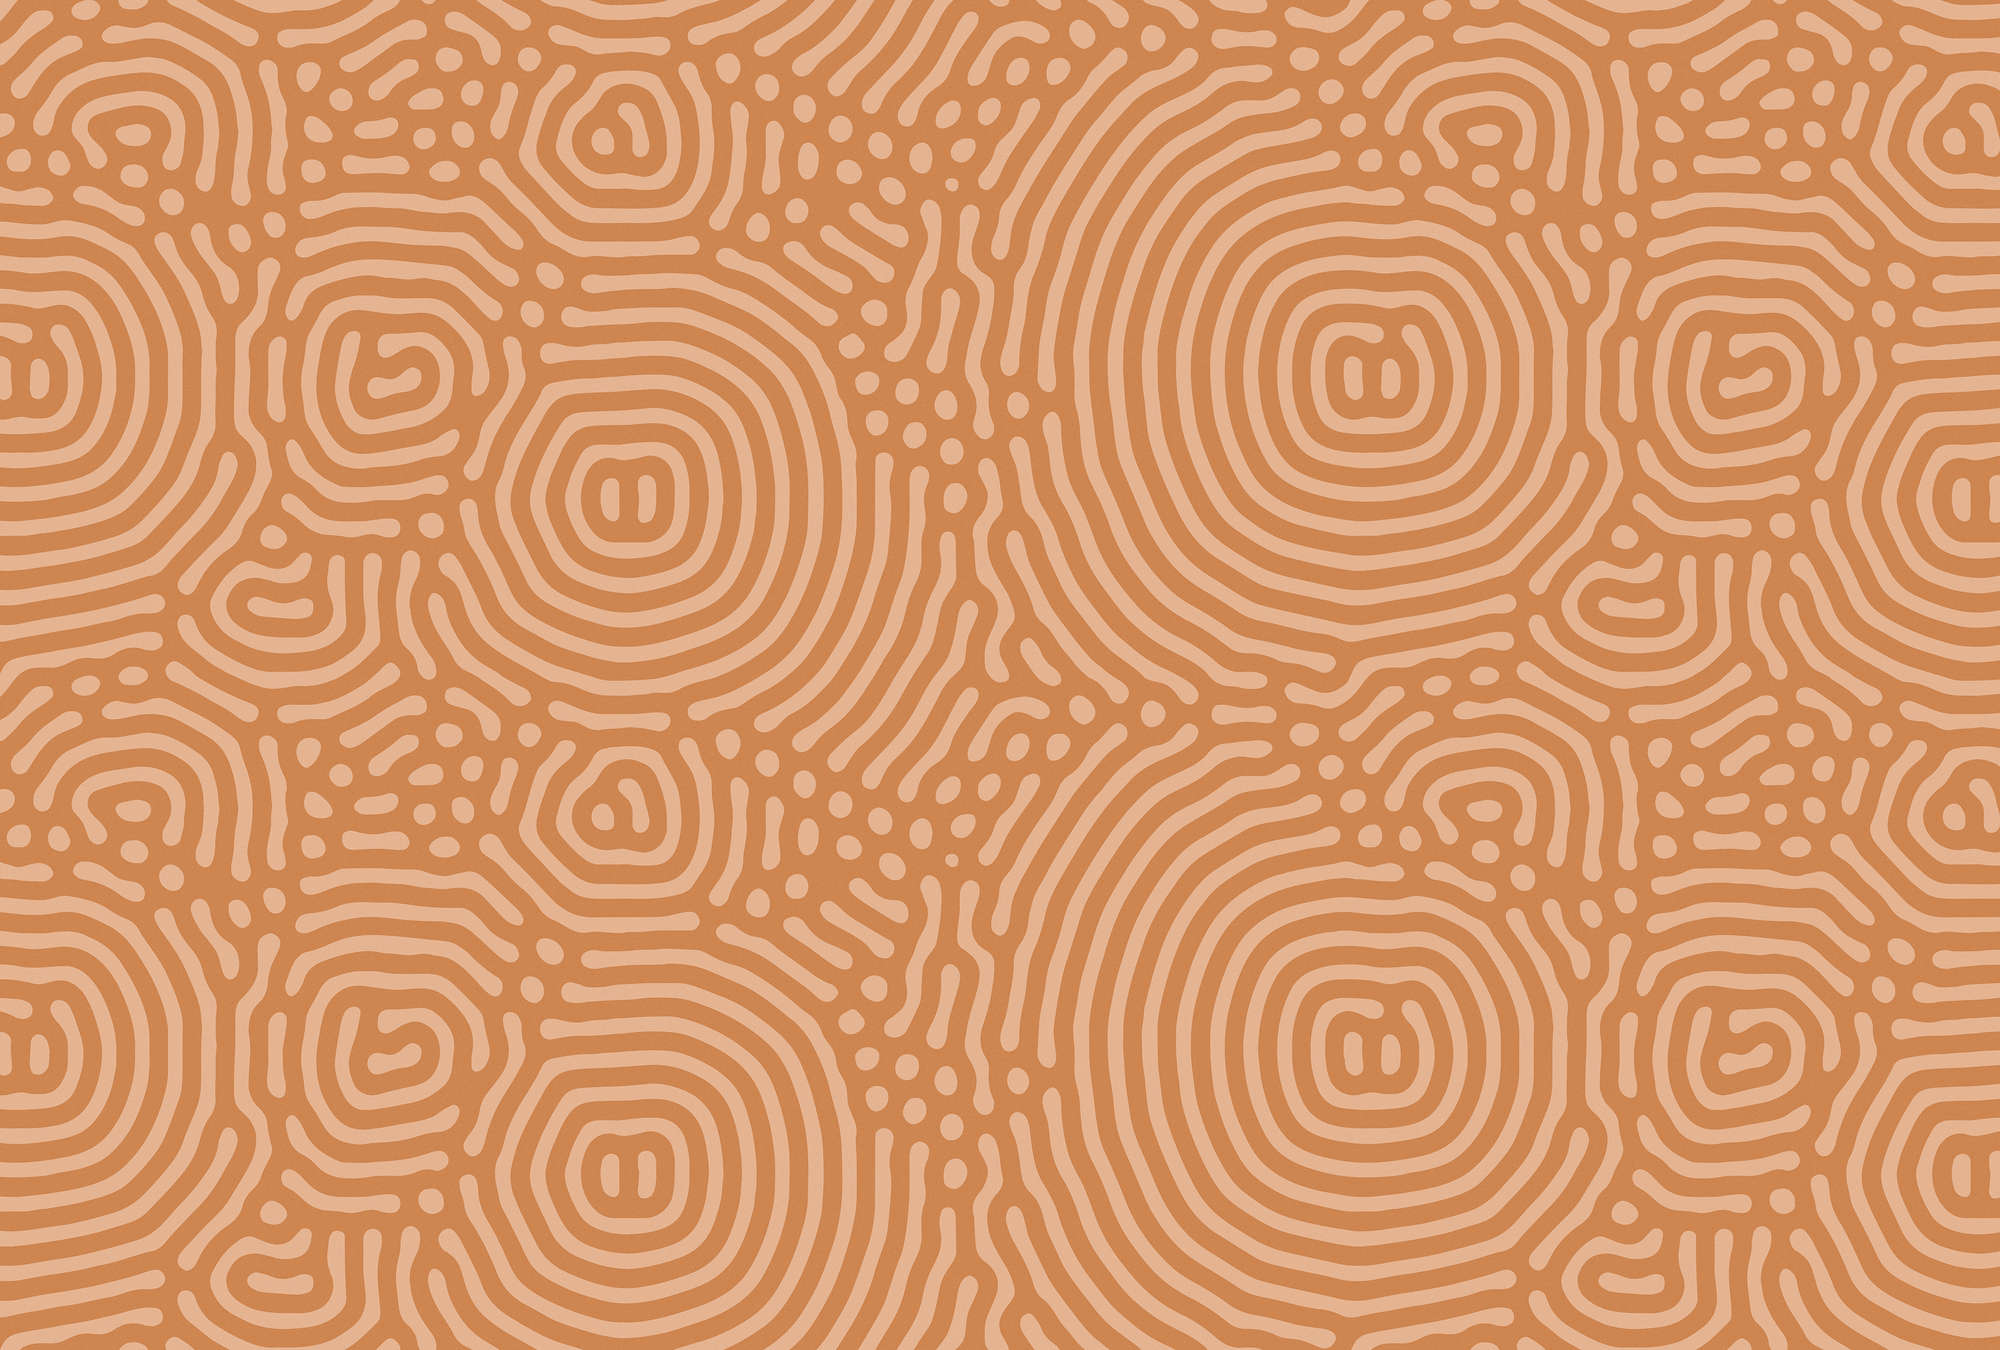             Sahel 2 - Carta da parati arancione con motivo a labirinto in terracotta
        